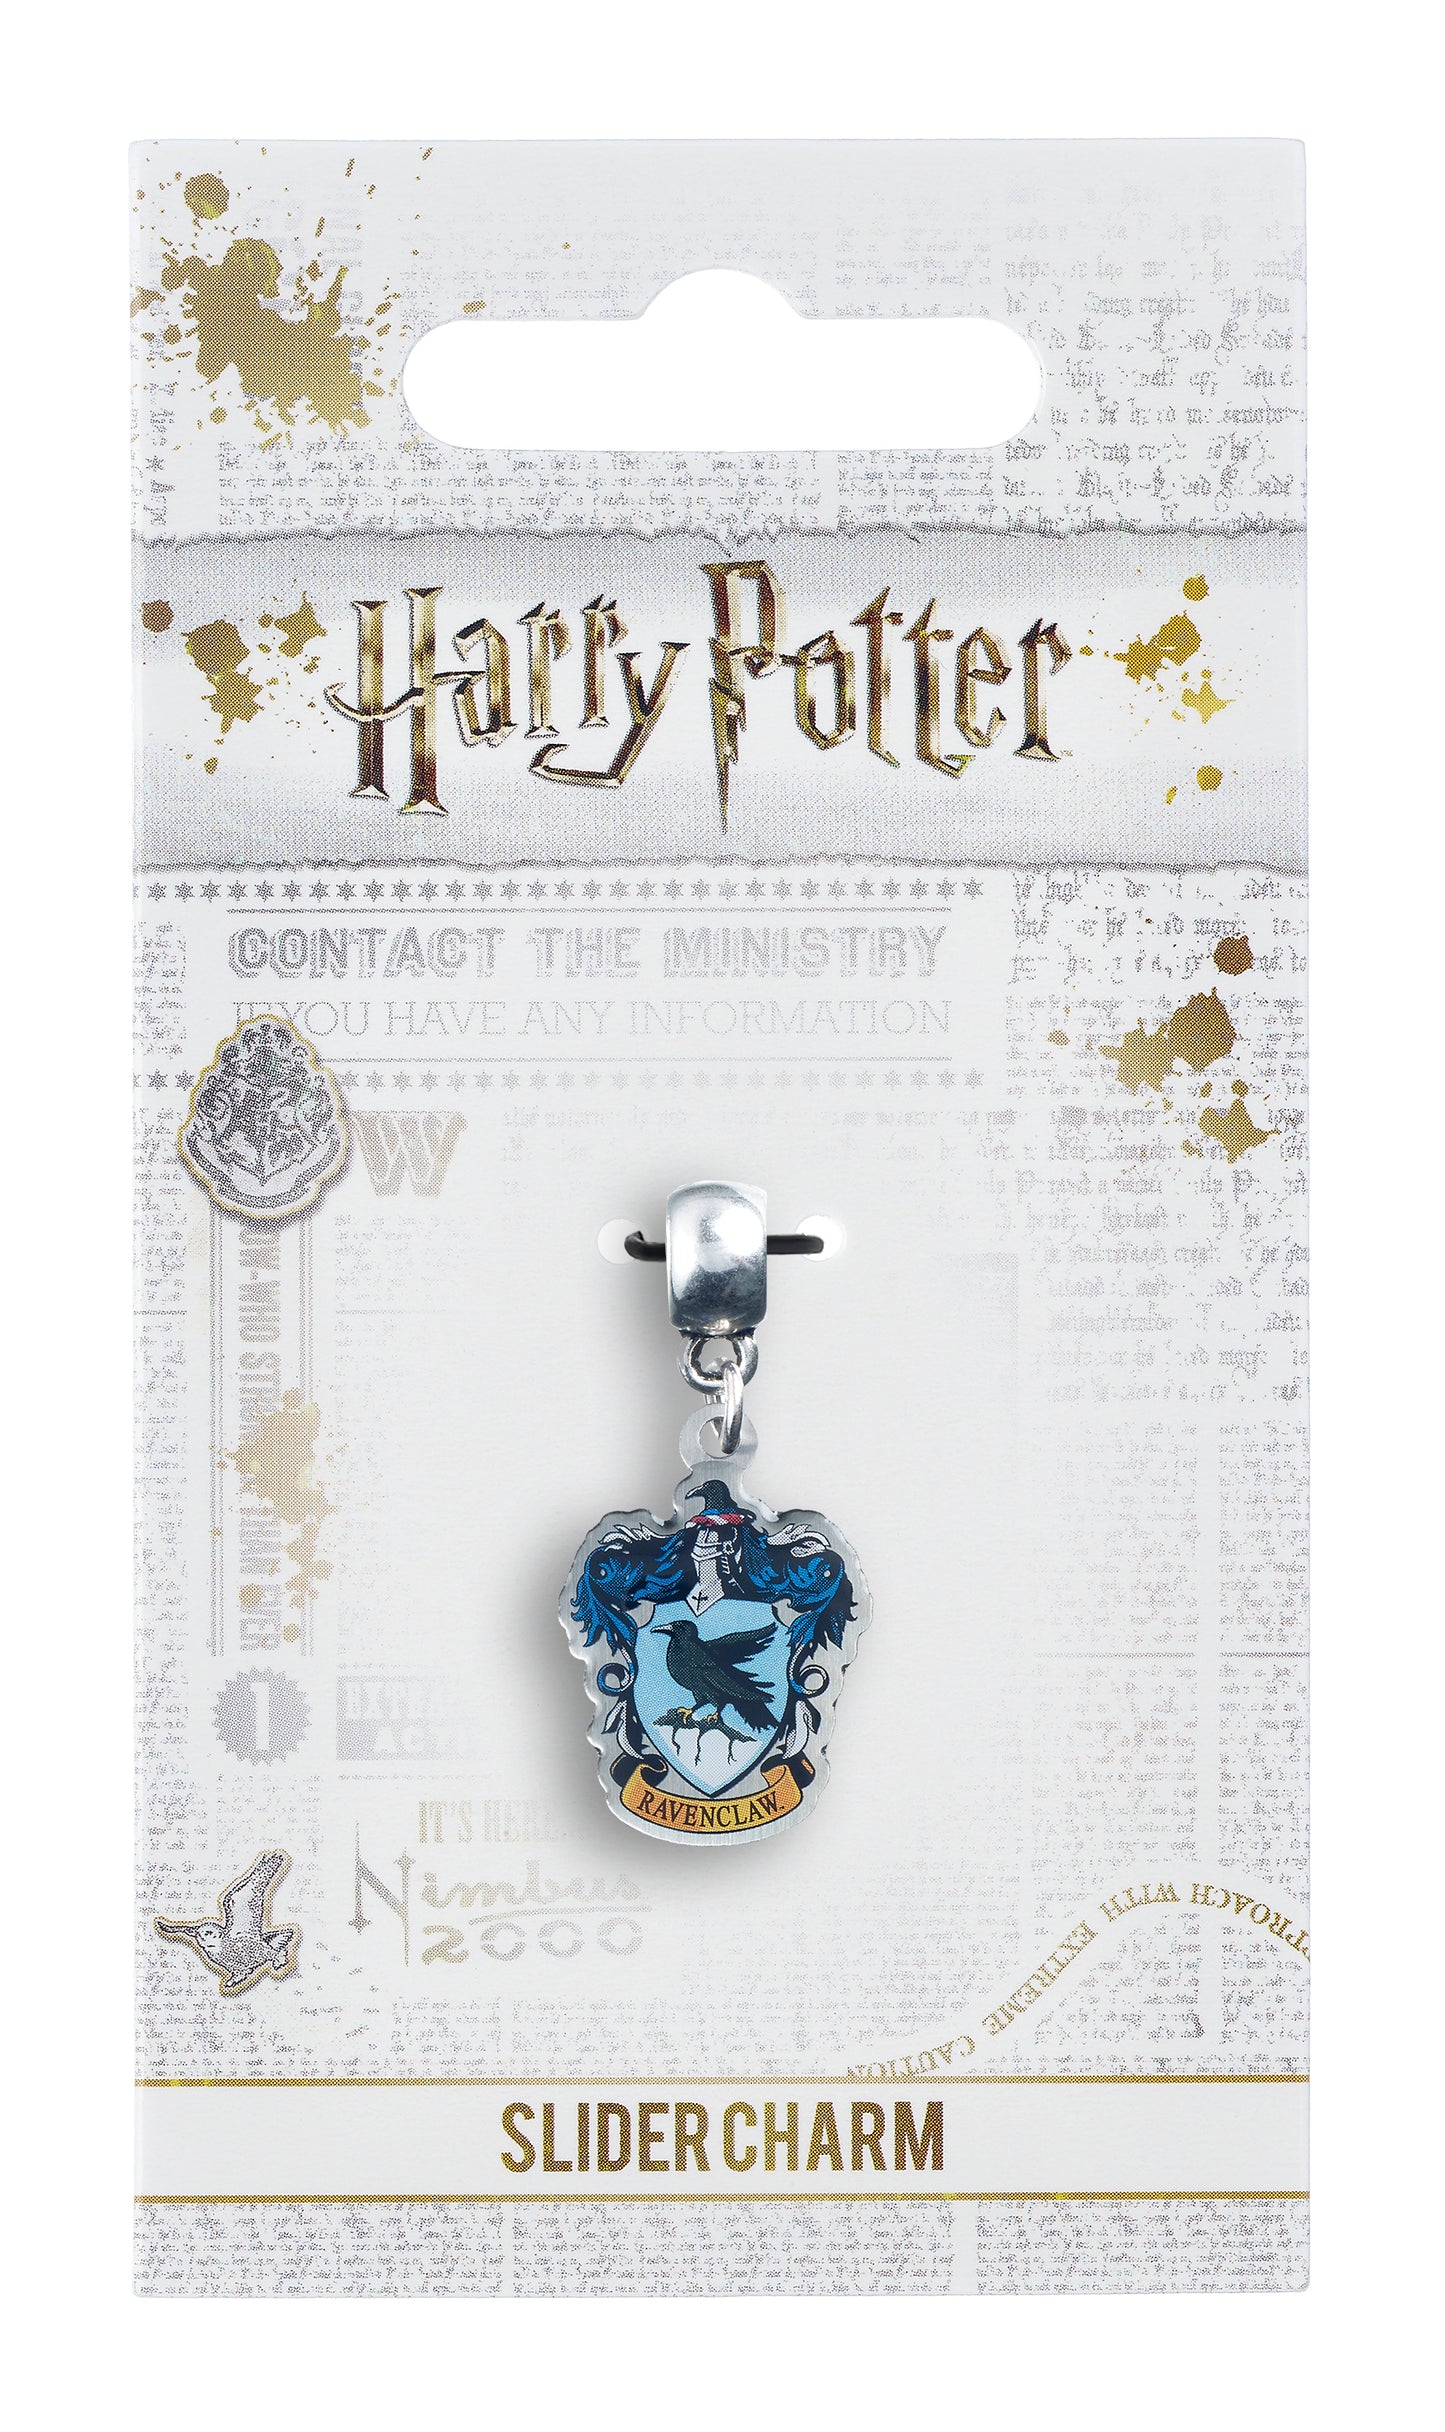 Charm Curseur Harry Potter Serdaigle Crest - Bleu